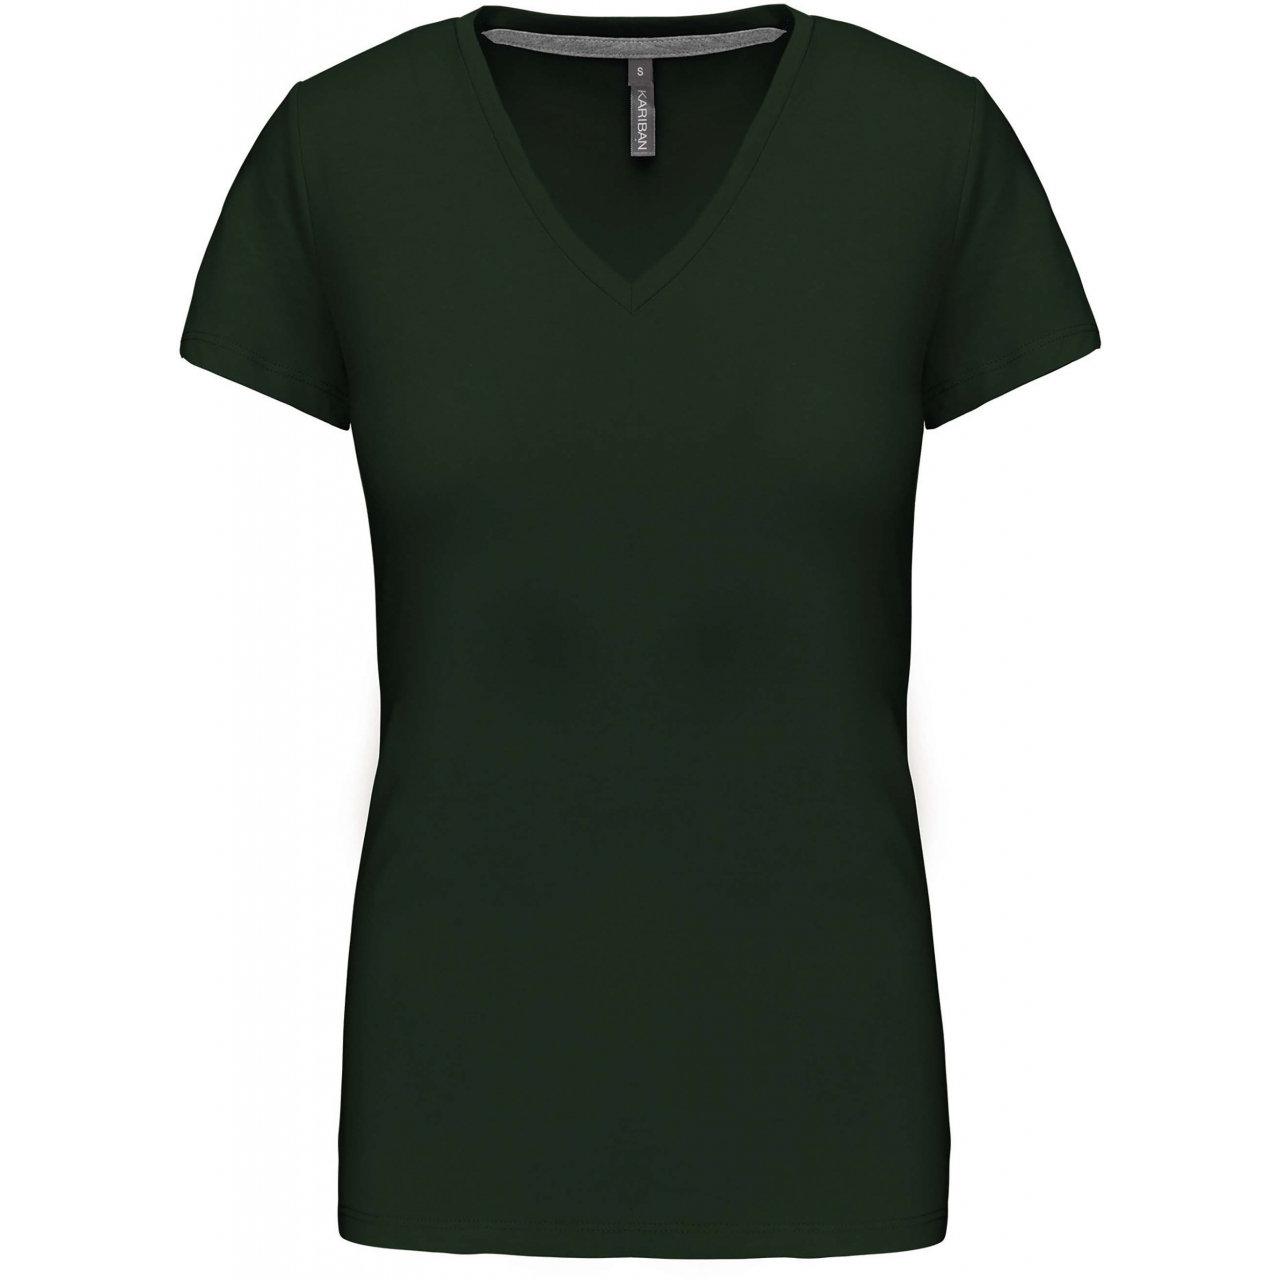 Dámské tričko Kariban V-neck s krátkým rukávem - tmavě zelené, L